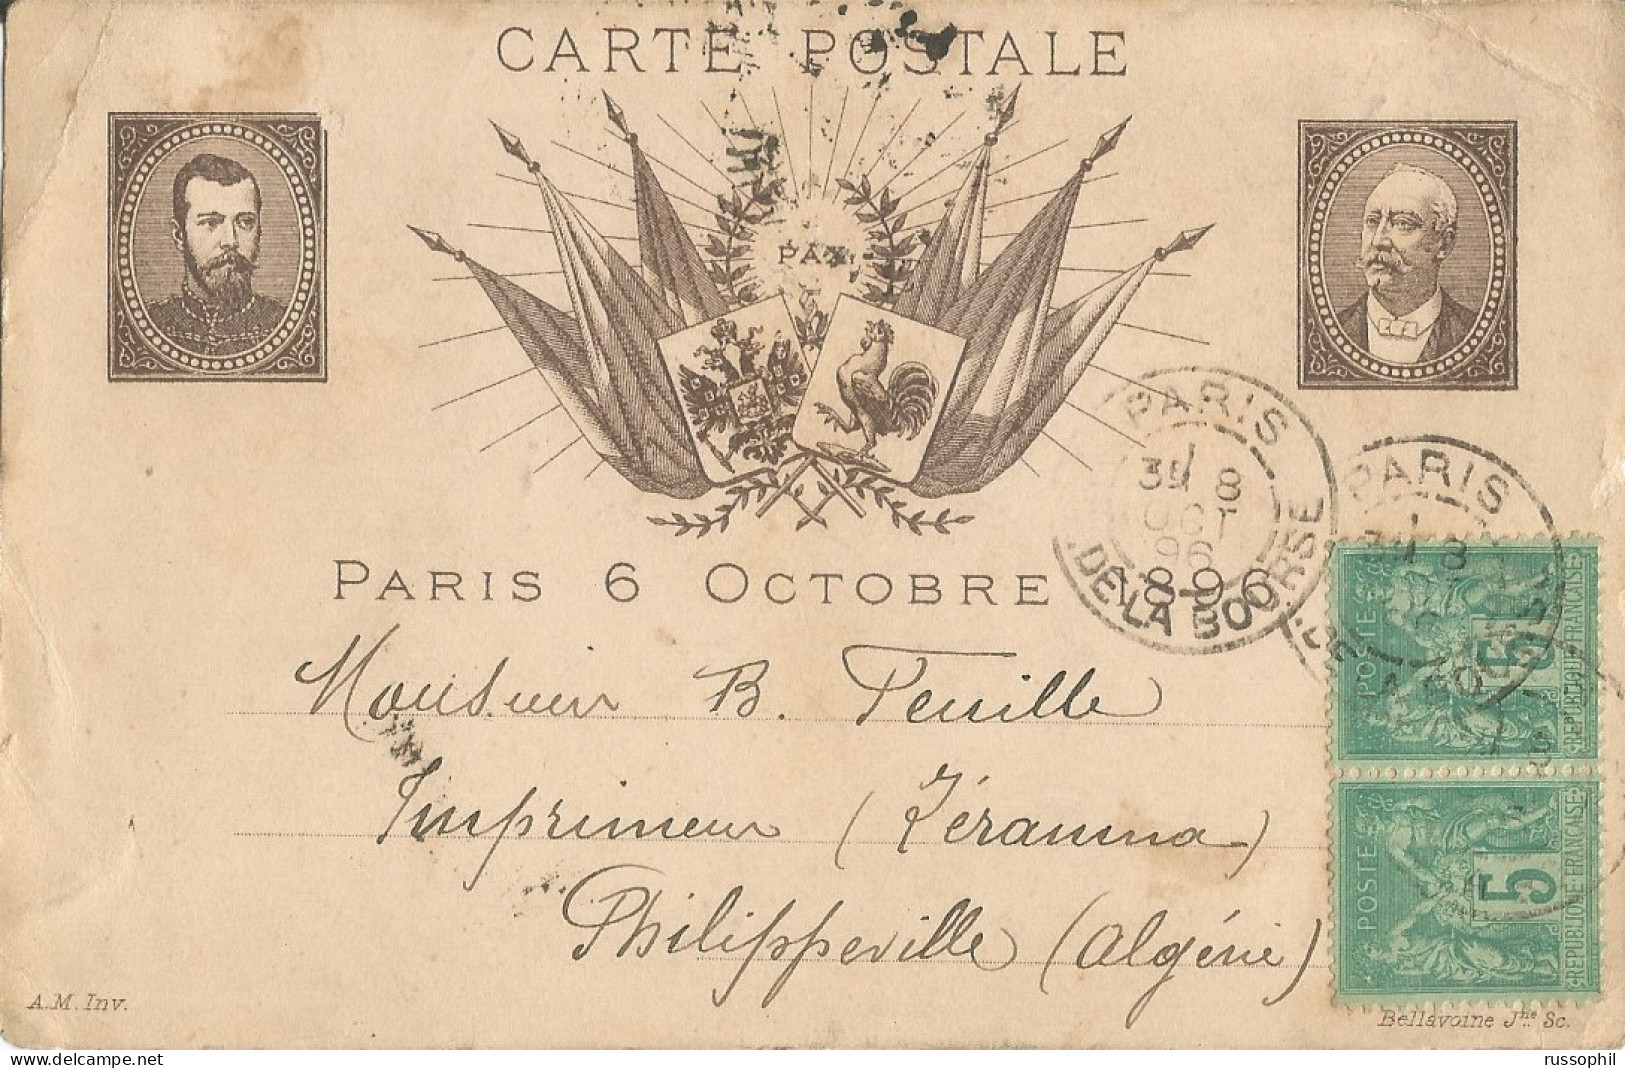 FRANCO RUSSIAN ALLIANCE - PARIS 6 OCTOBRE 1896 - ED BELLAVOINE - 1896 - Evènements